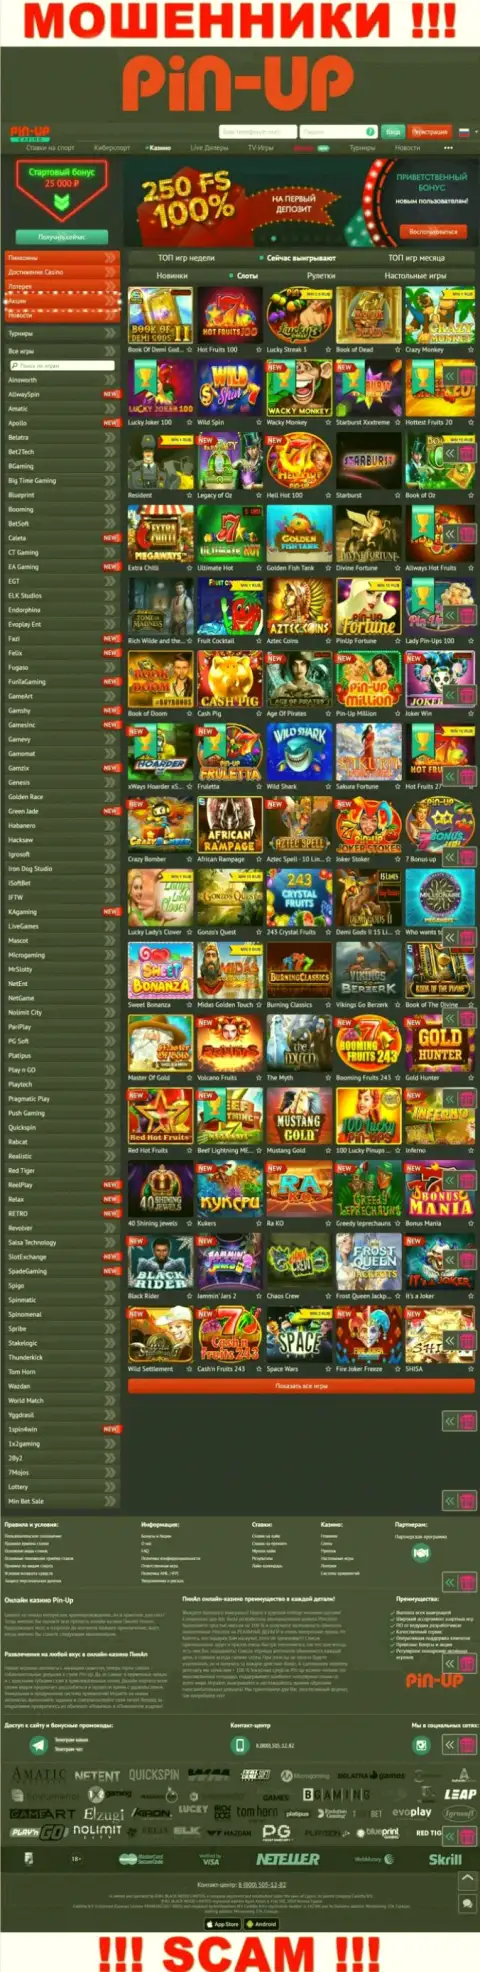 Pin-Up Casino - это официальный портал internet воров Пин-Ап Казино